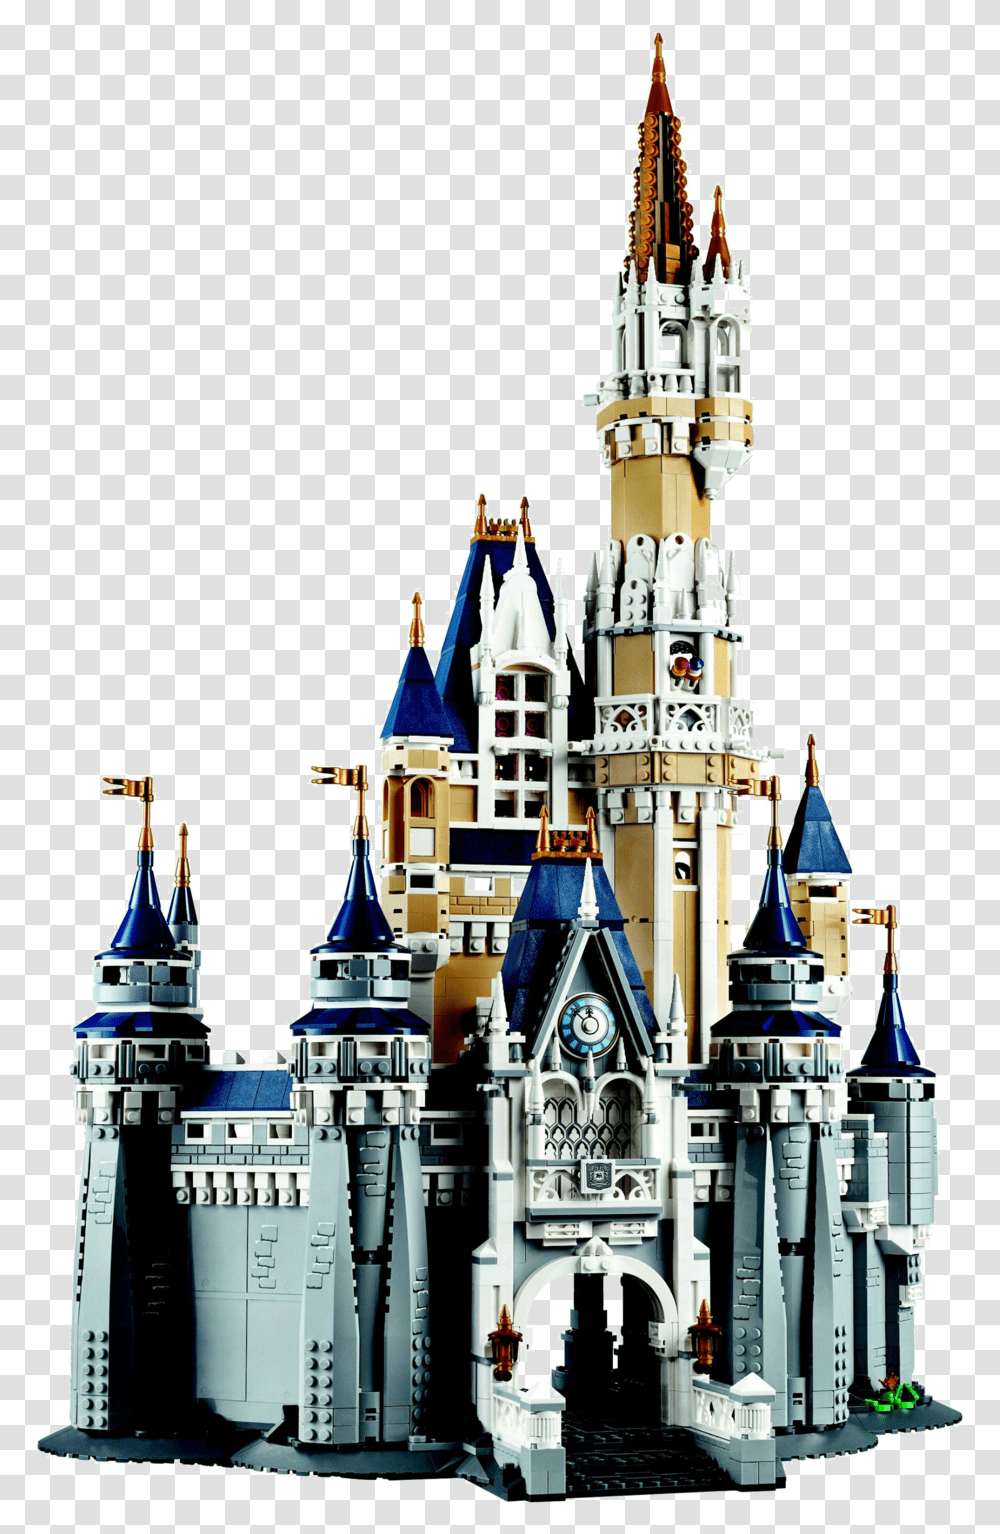 Walt Disney Castle Disney Castle Lego Set, Architecture, Building, Spire, Tower Transparent Png